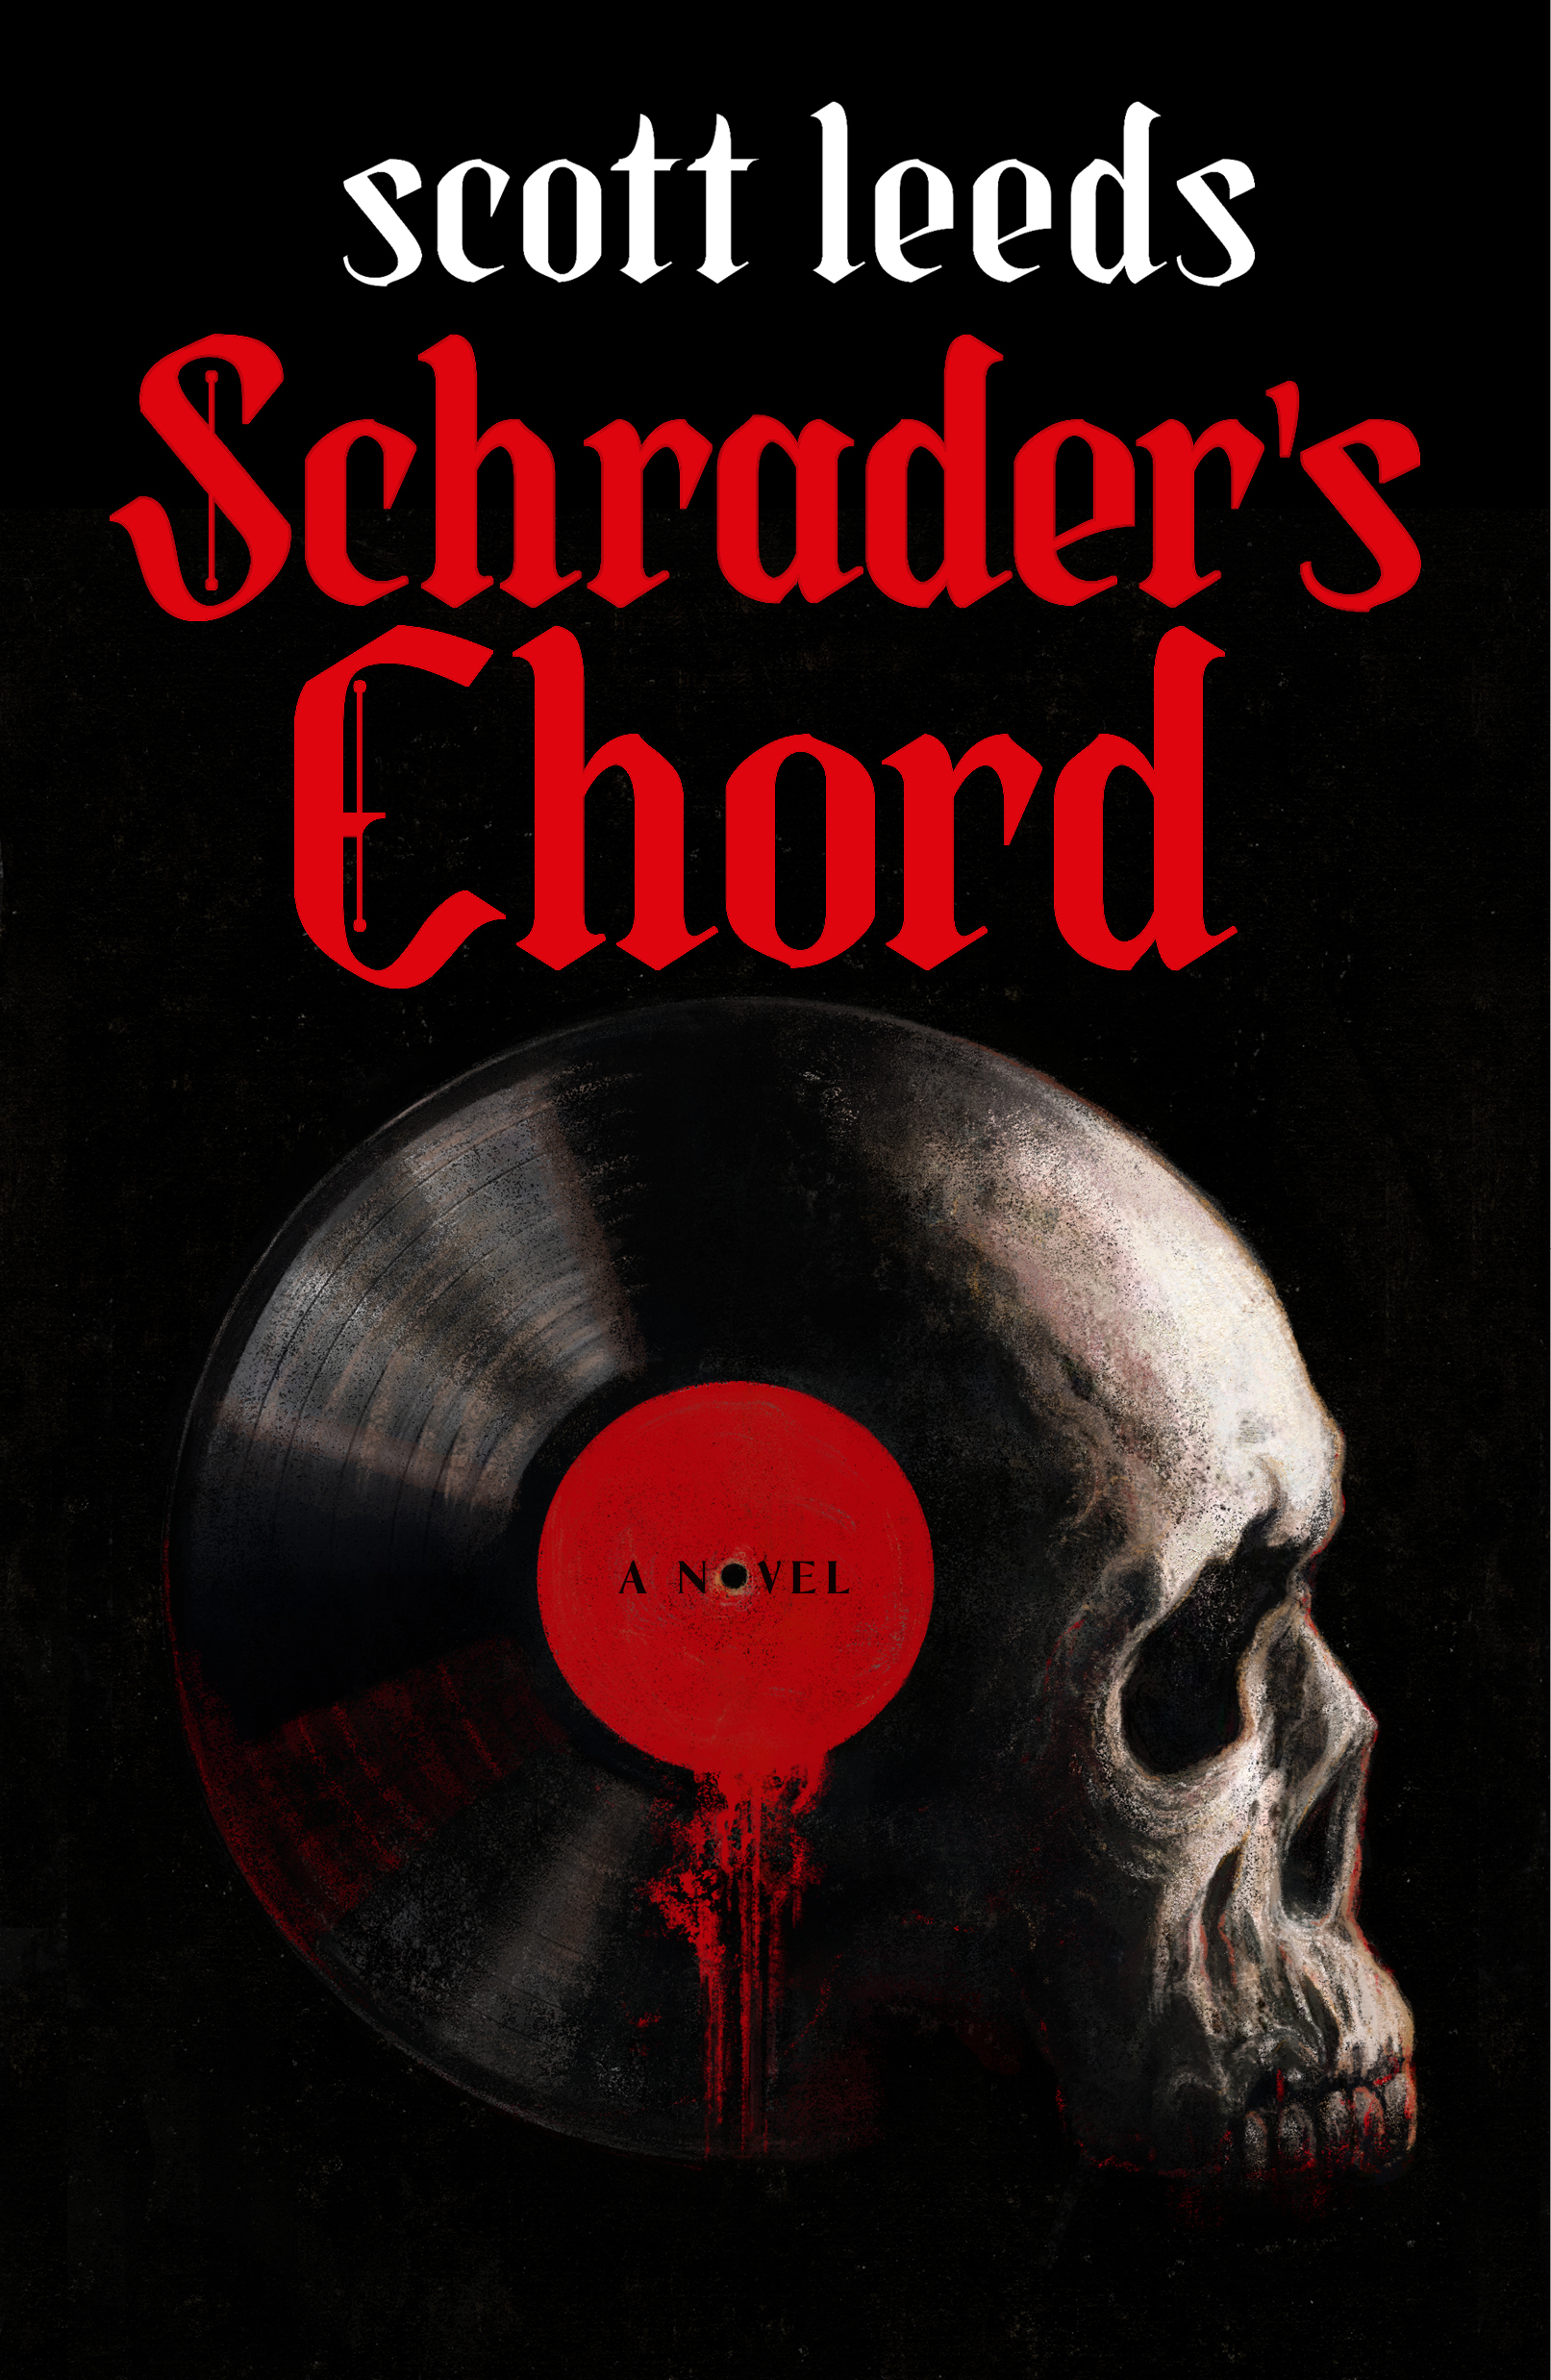 Schrader's Chord - 524